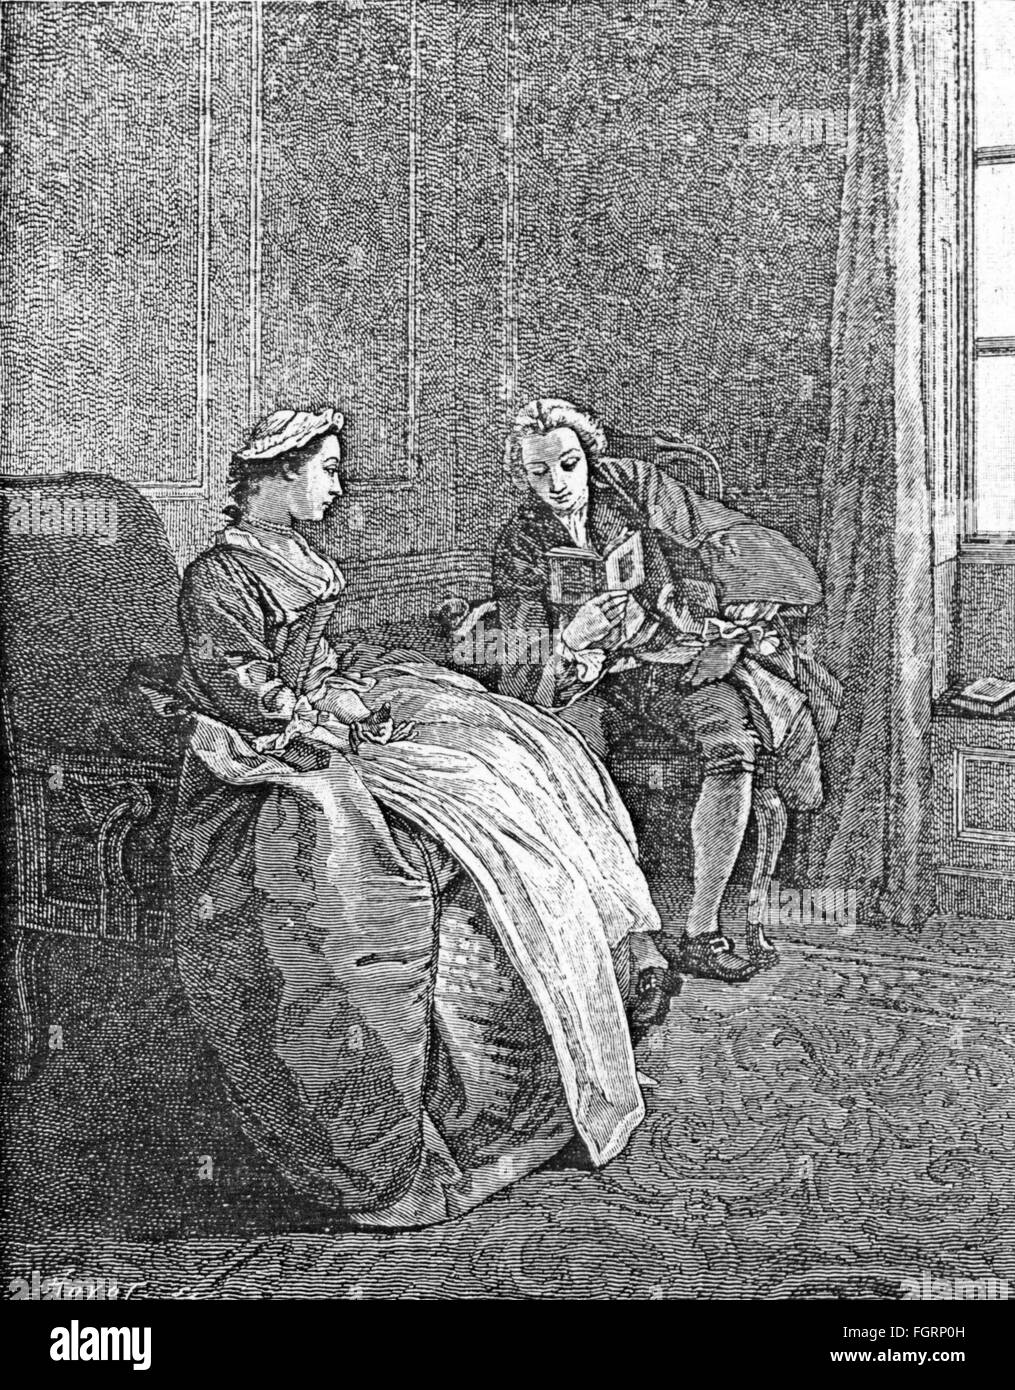 Personnes, activités, lecture, "Le lecteur" (le lecteur), après l'Hubert-Francois Gravelot (1699 - 1773), gravure sur cuivre, 18e siècle, l'artiste n'a pas d'auteur pour être effacé Banque D'Images